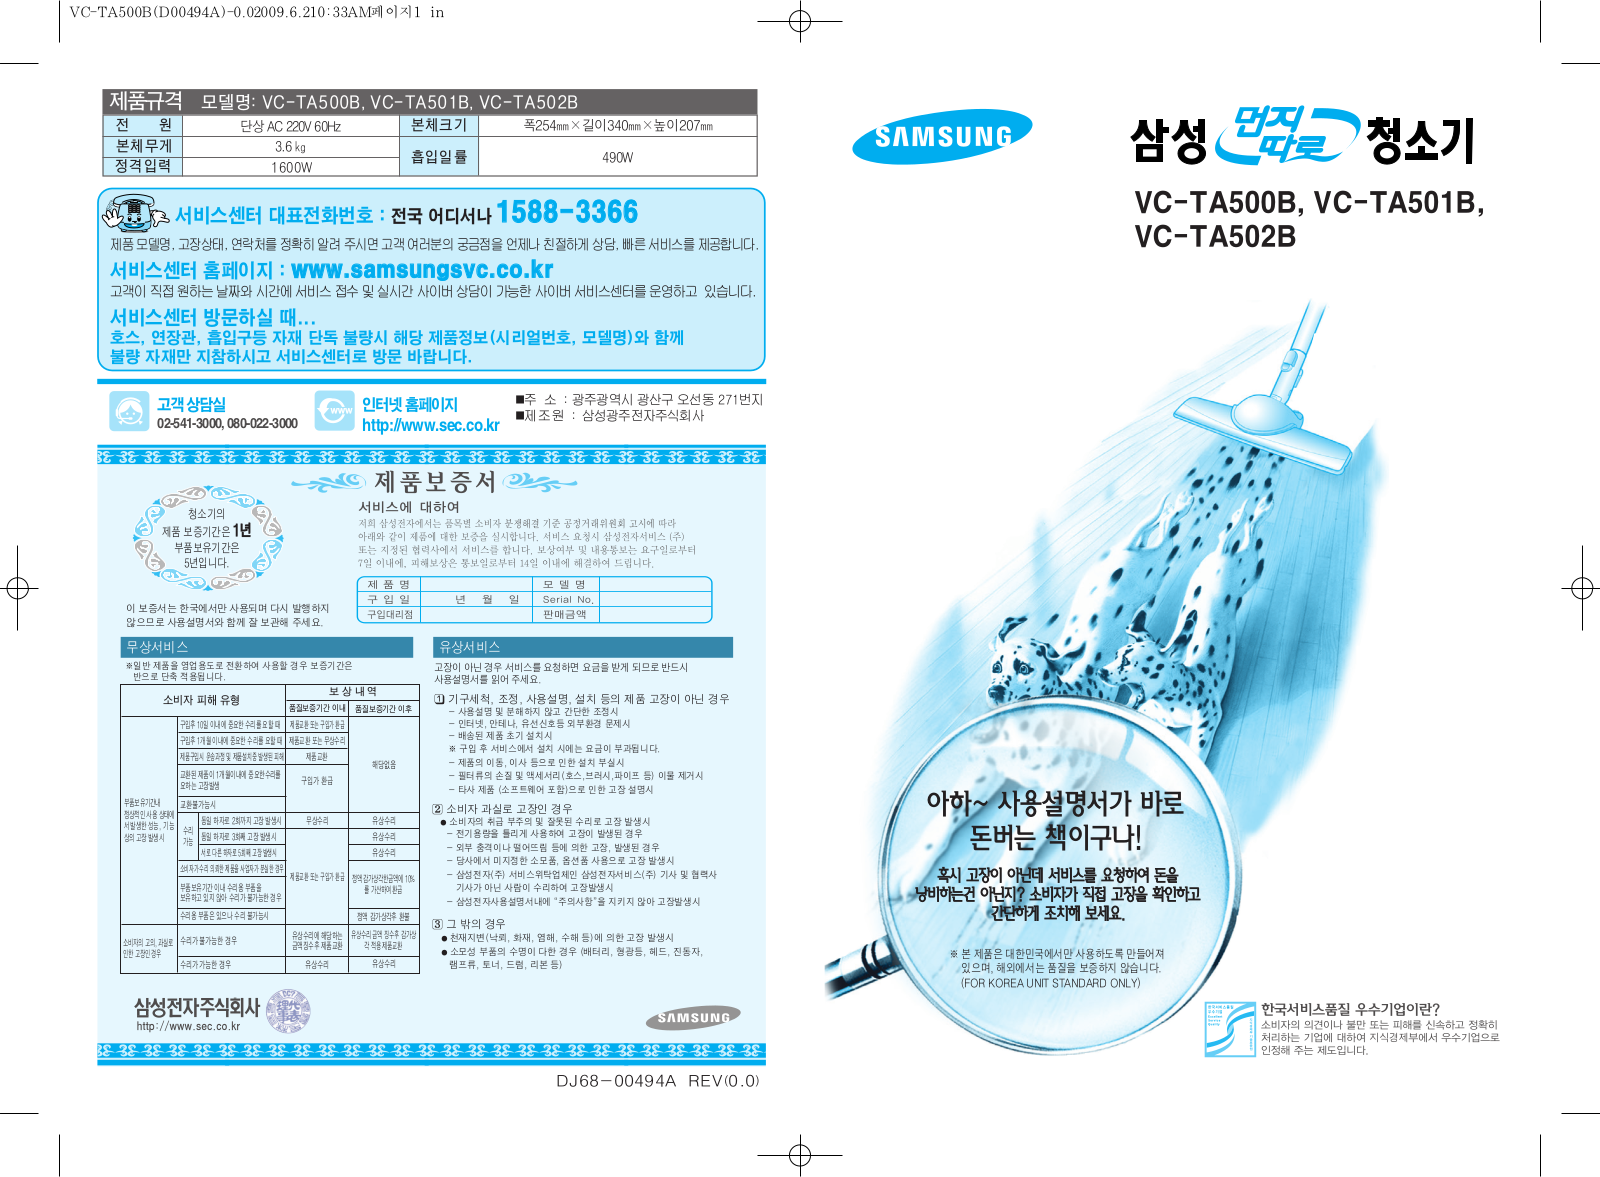 Samsung VC-TA501B, VC-TA502B, VC-TA500B User Manual